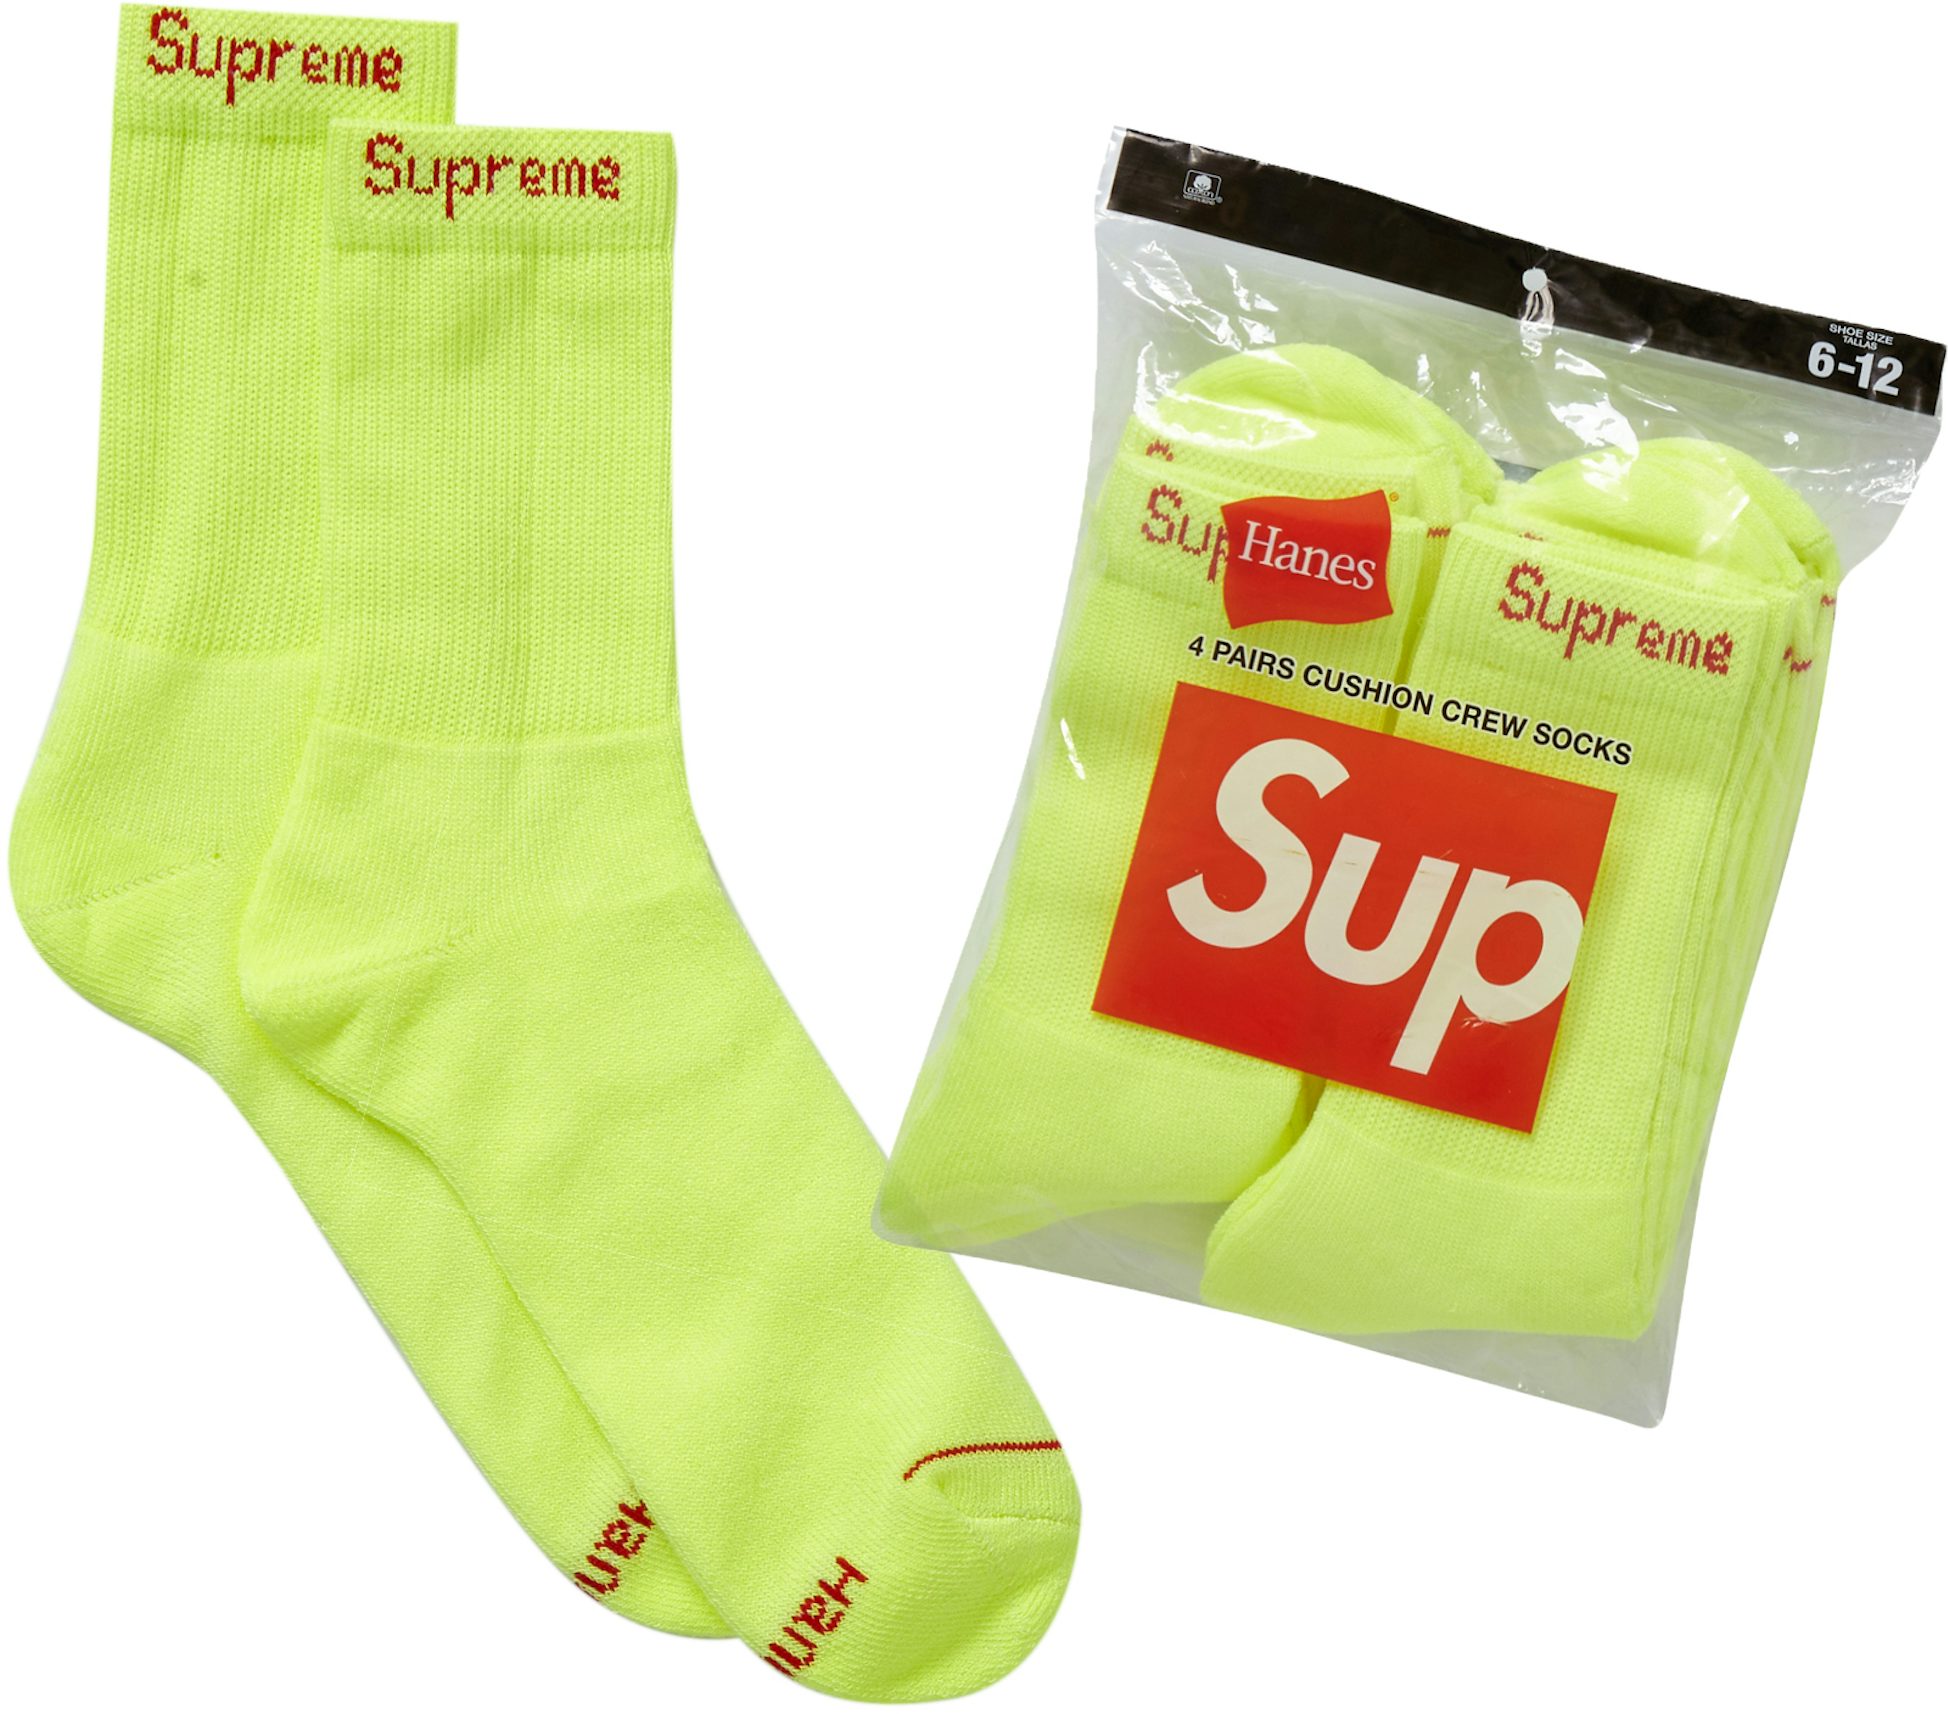 Louis Vuitton x Supreme Socks